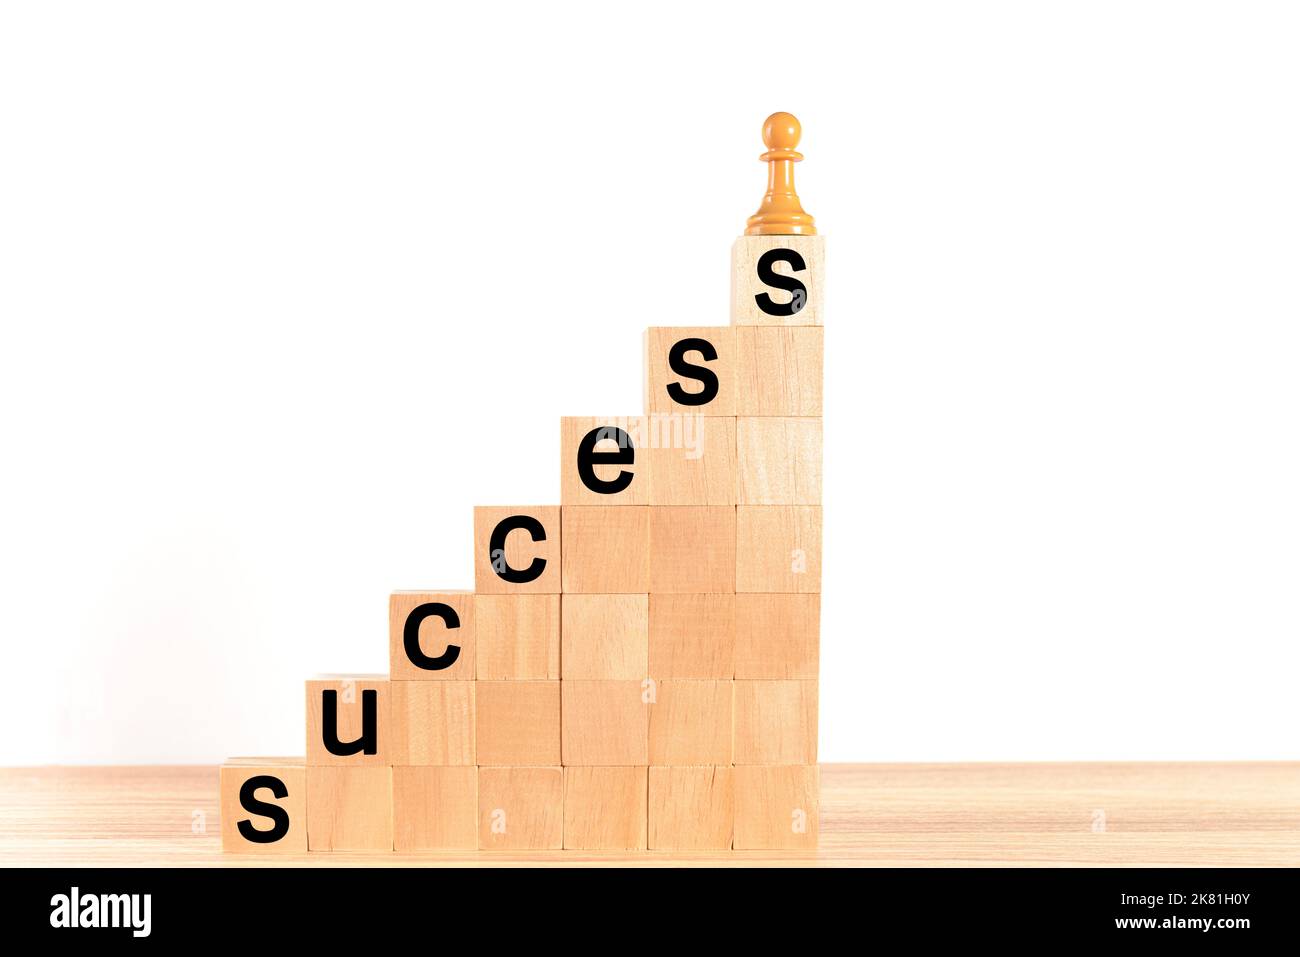 Schachfigur an der Spitze einer hölzernen Blockleiter, mit dem Wort "Erfolg" auf den Stufen, auf weißem Hintergrund geschrieben. Konzept der Selbstverbesserung, führen Stockfoto